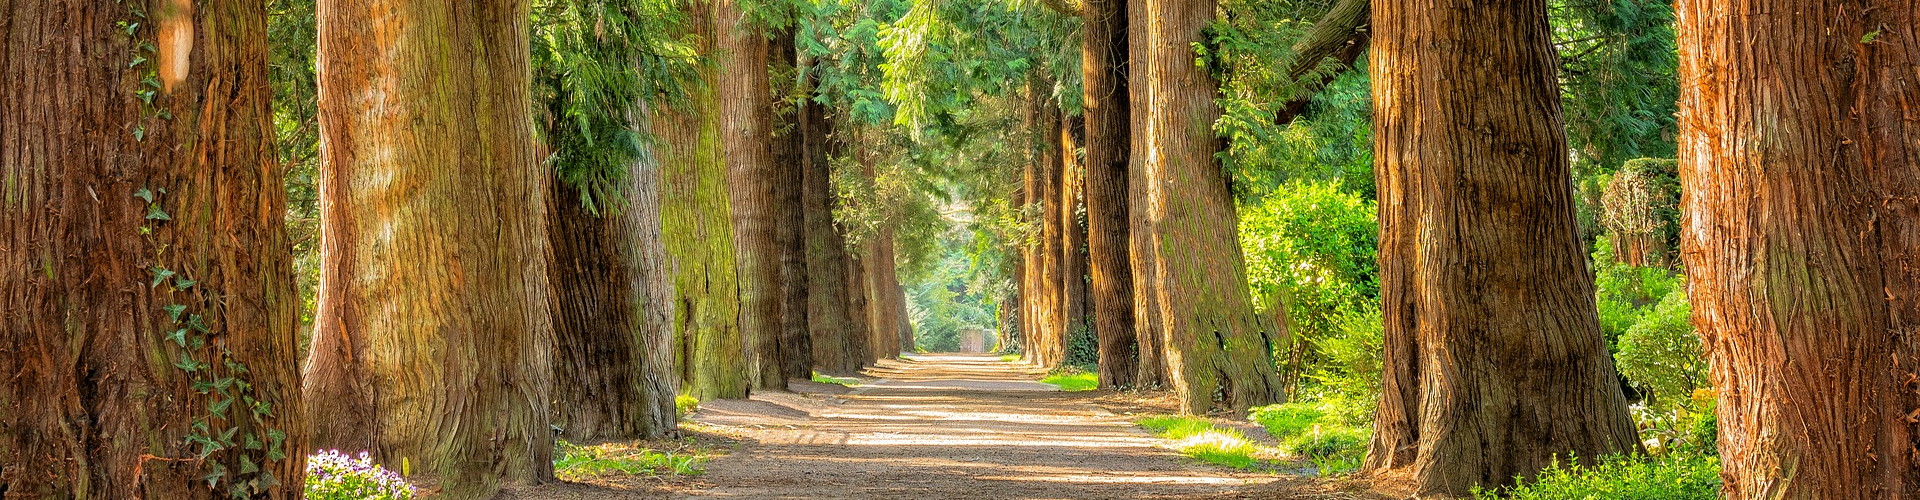 Waldweg, rechts und links große und alte Bäume